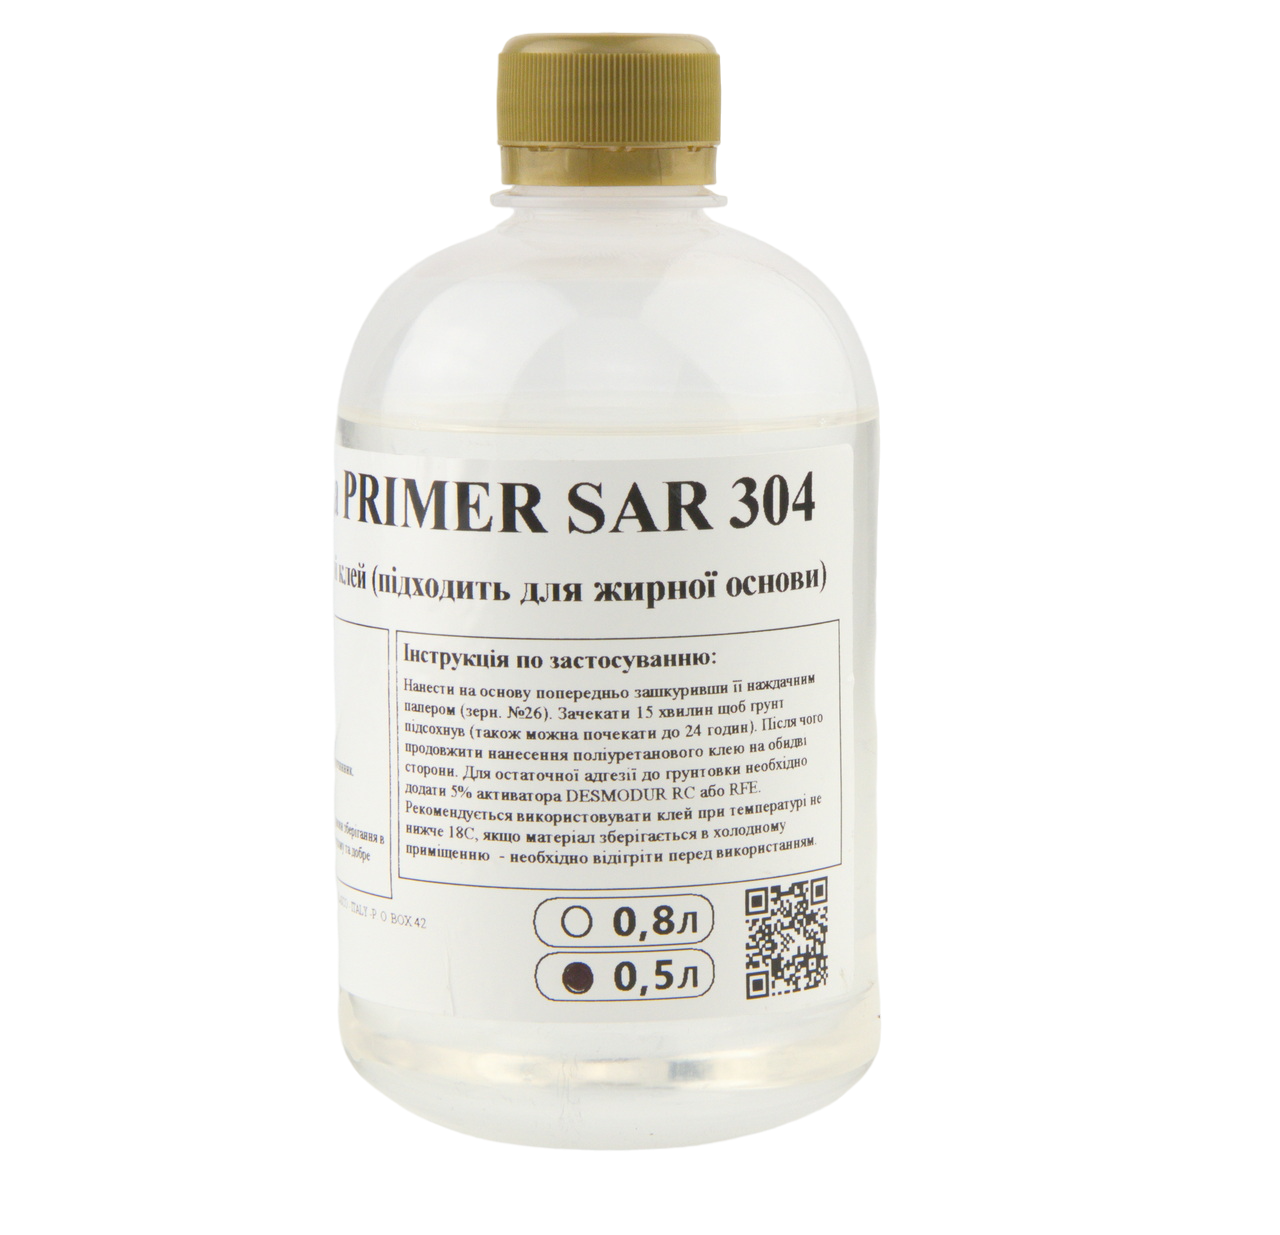 Ґрунтовка PRIMER SAR 304 під поліуретановий клей (підходить для жирної основи) детальна фотка